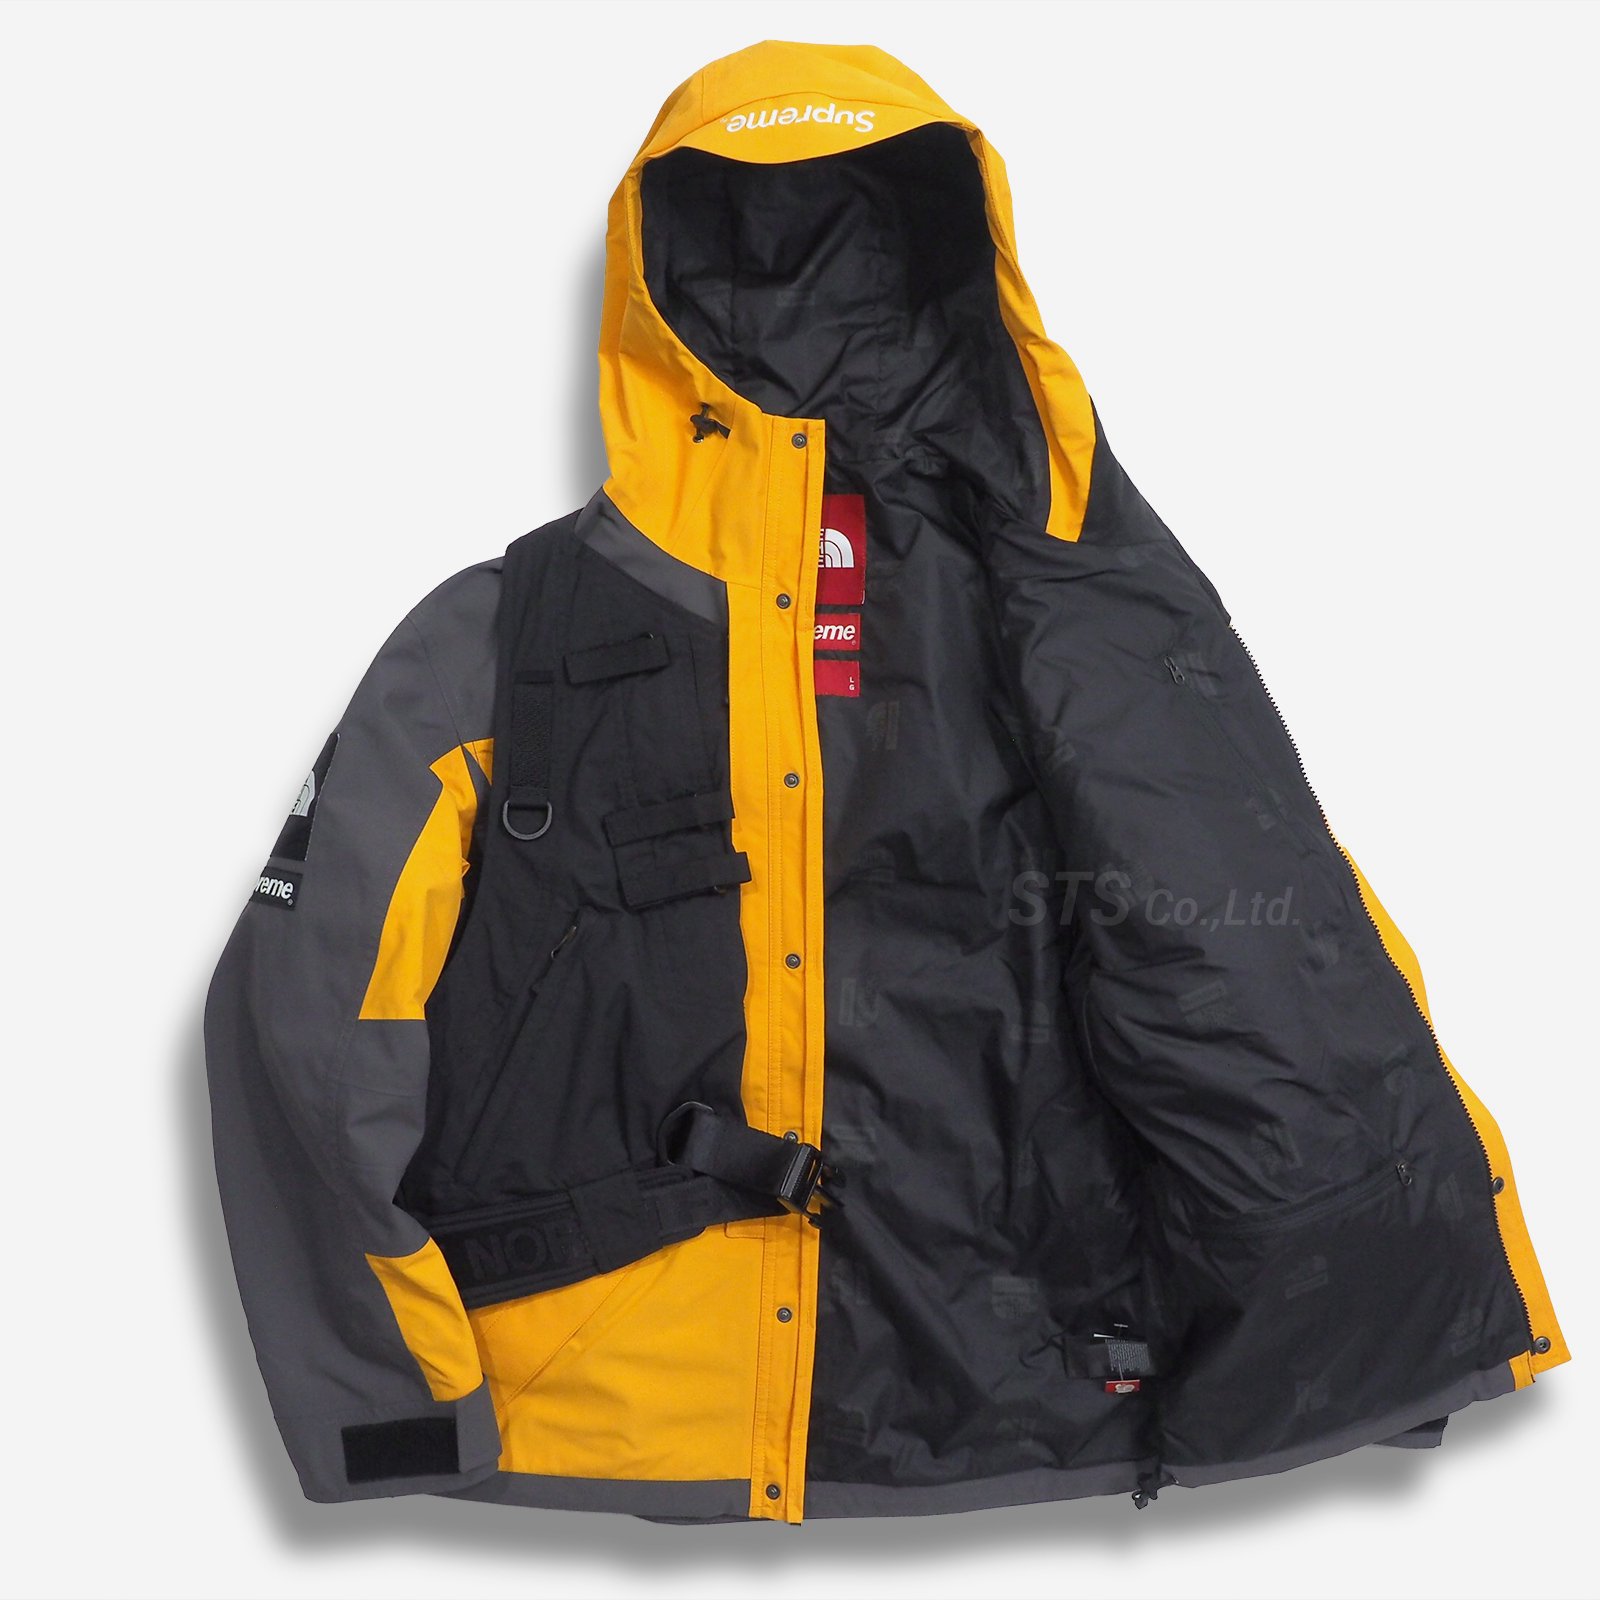 Supreme/The North Face RTG Jacket + Vest - ParkSIDER